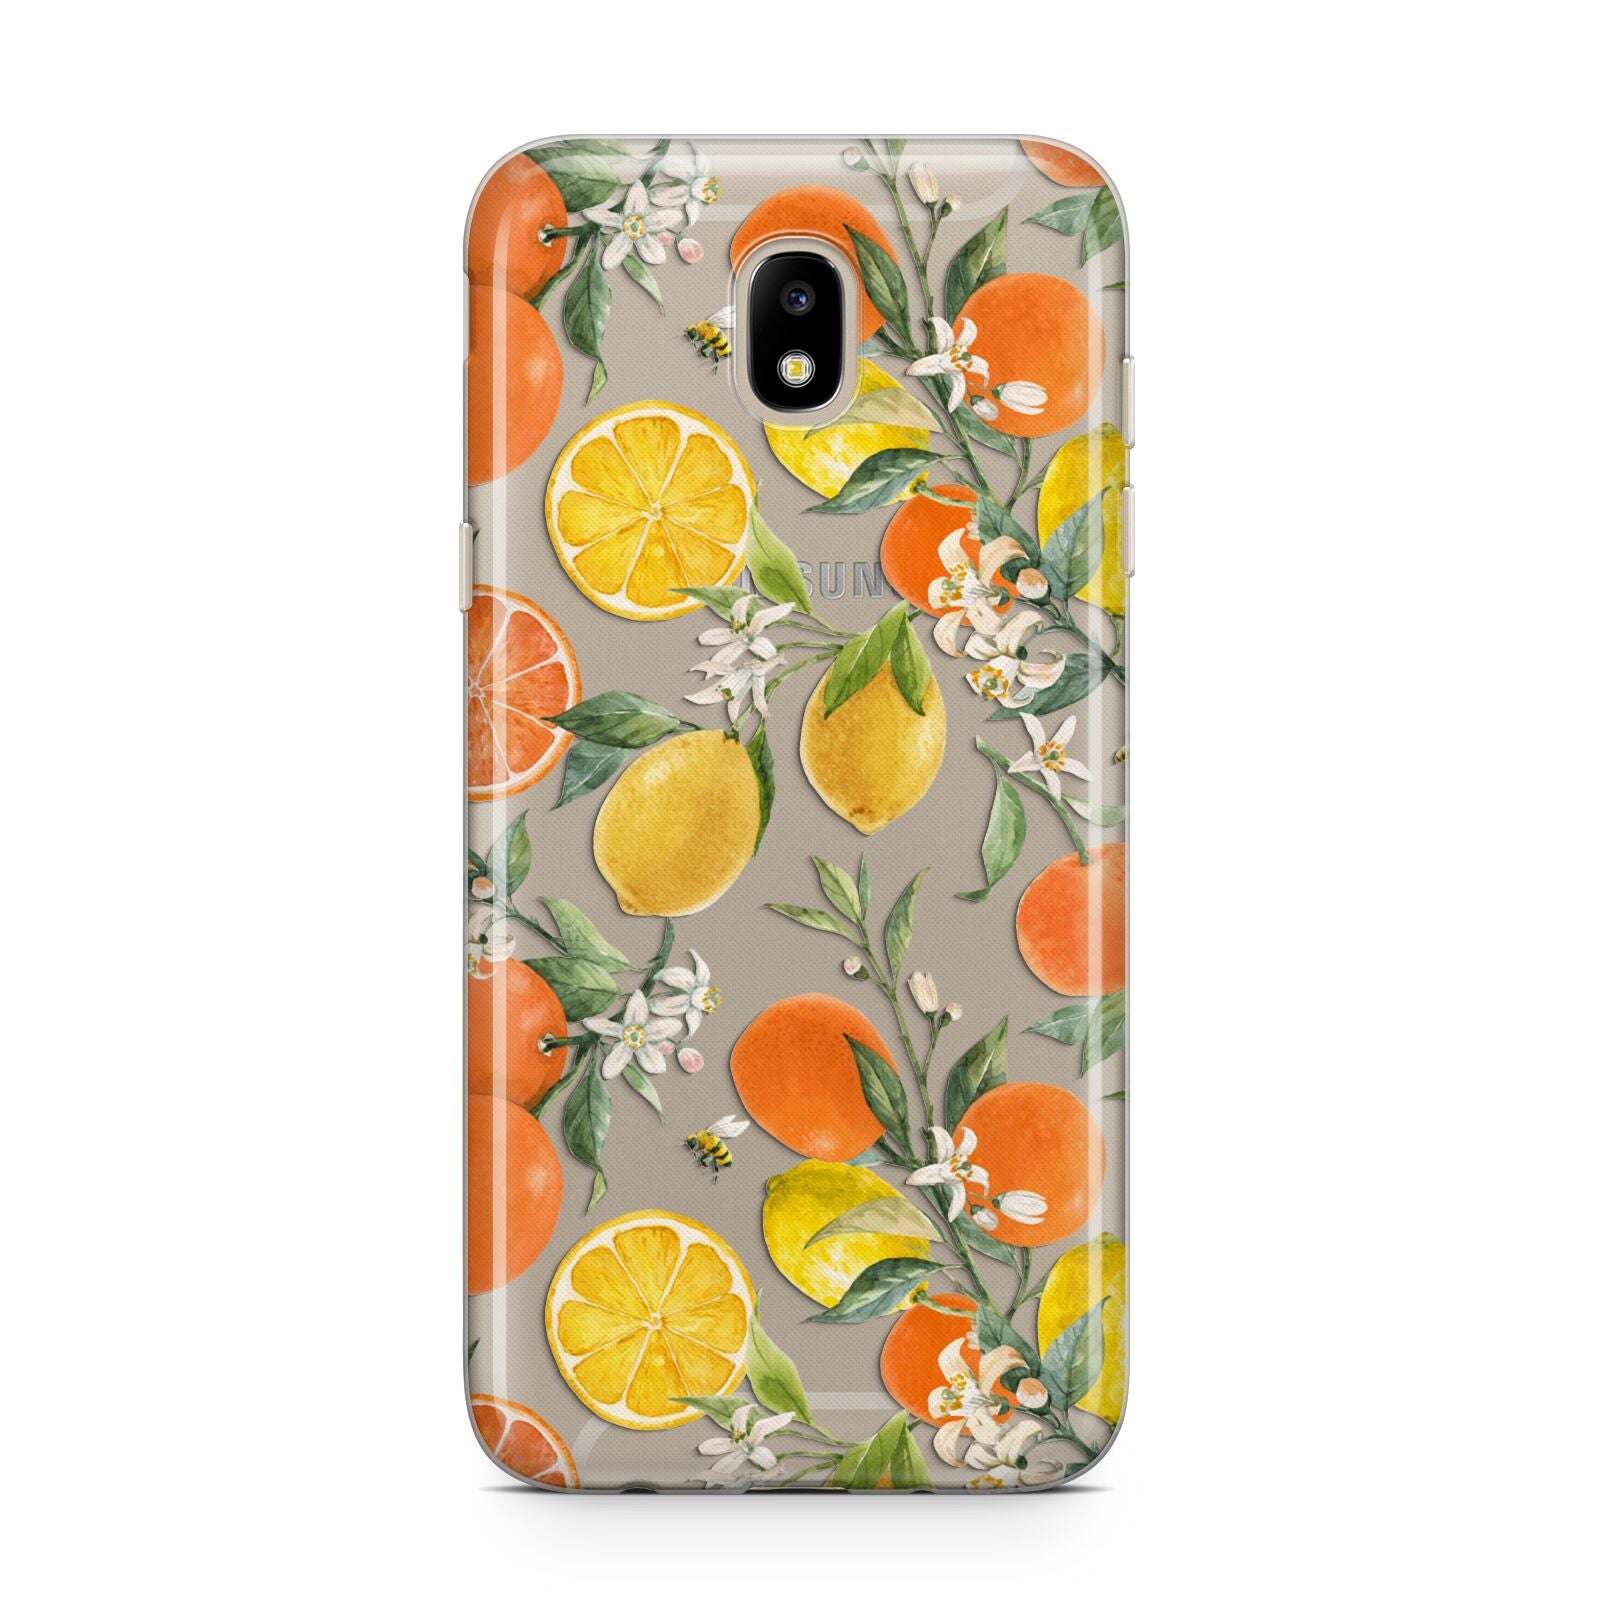 Lemons and Oranges Samsung J5 2017 Case